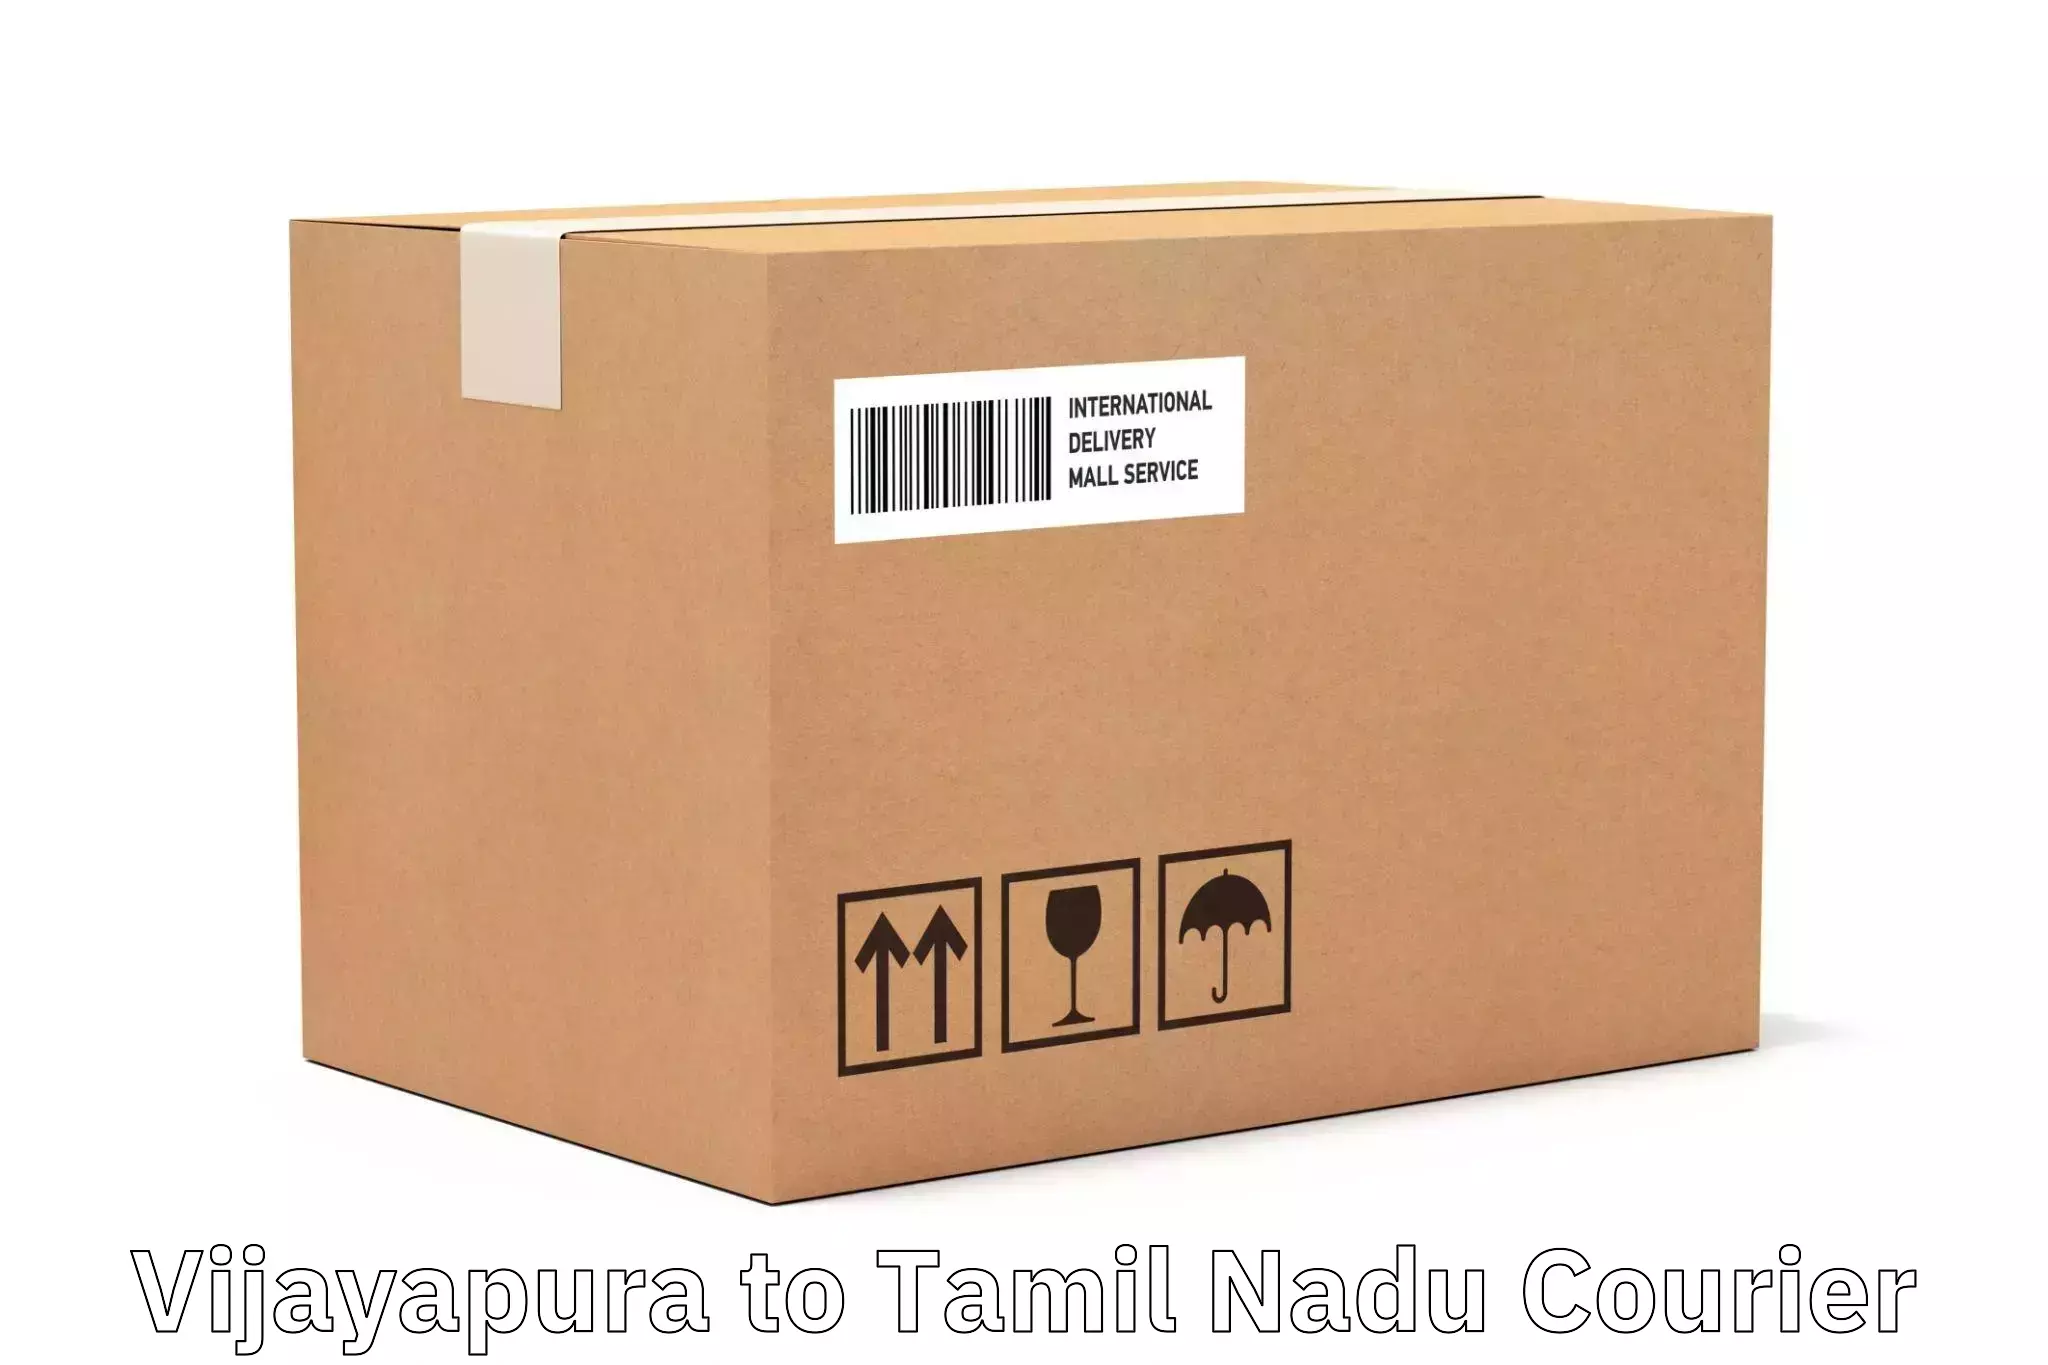 Scheduled delivery Vijayapura to Thygarayanagar